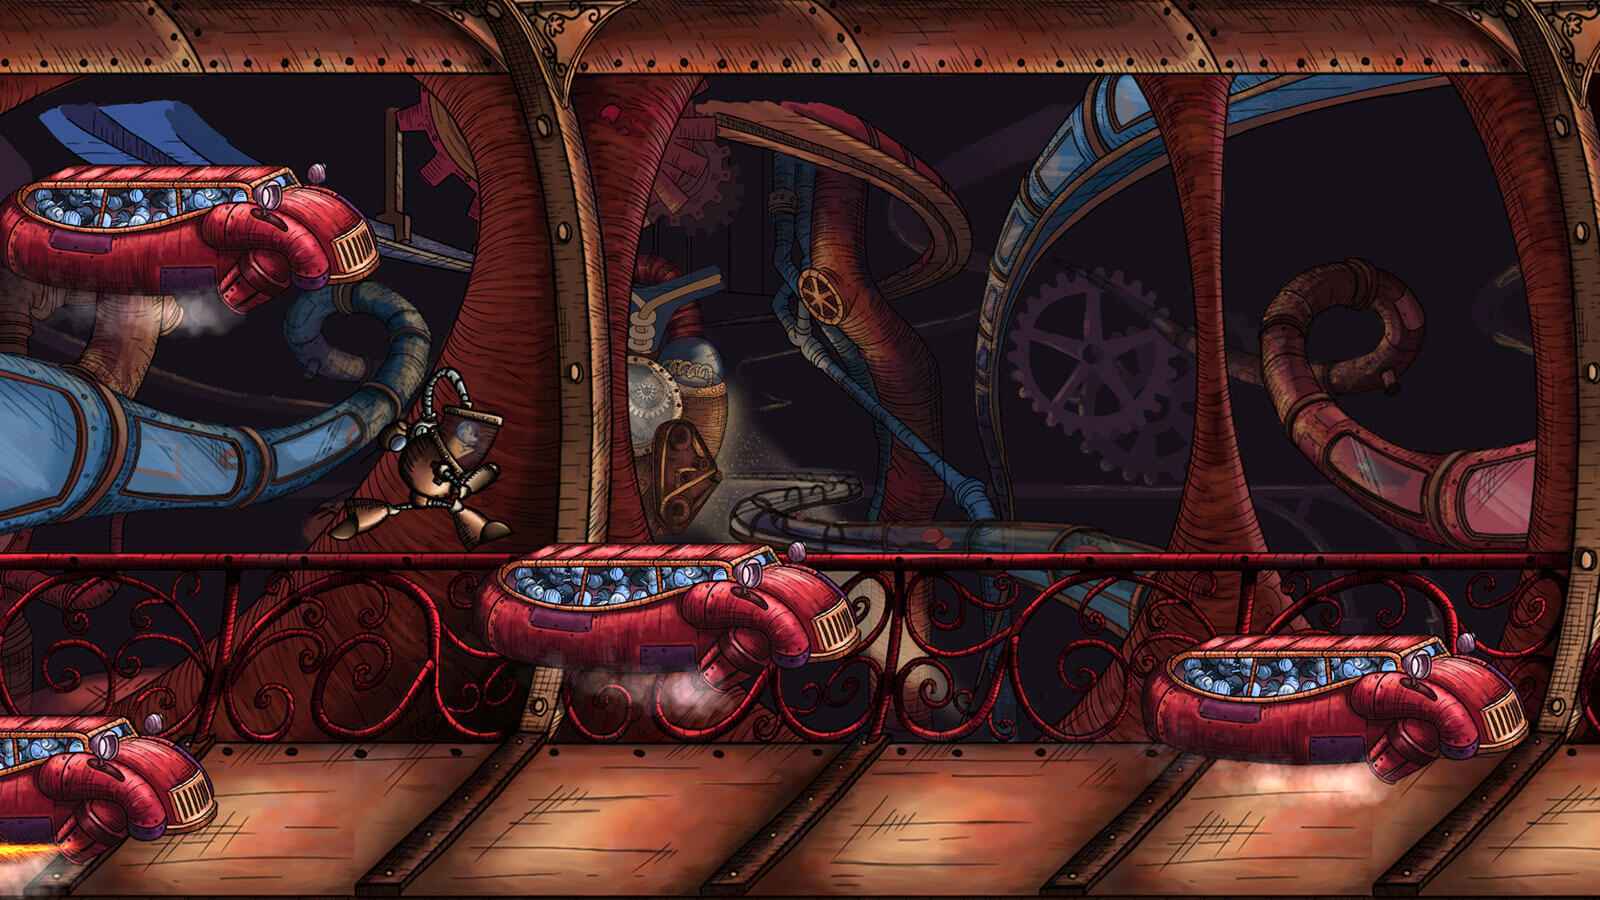 El jugador salta a una plataforma compuesta por un coche rojo lleno de latas grises.